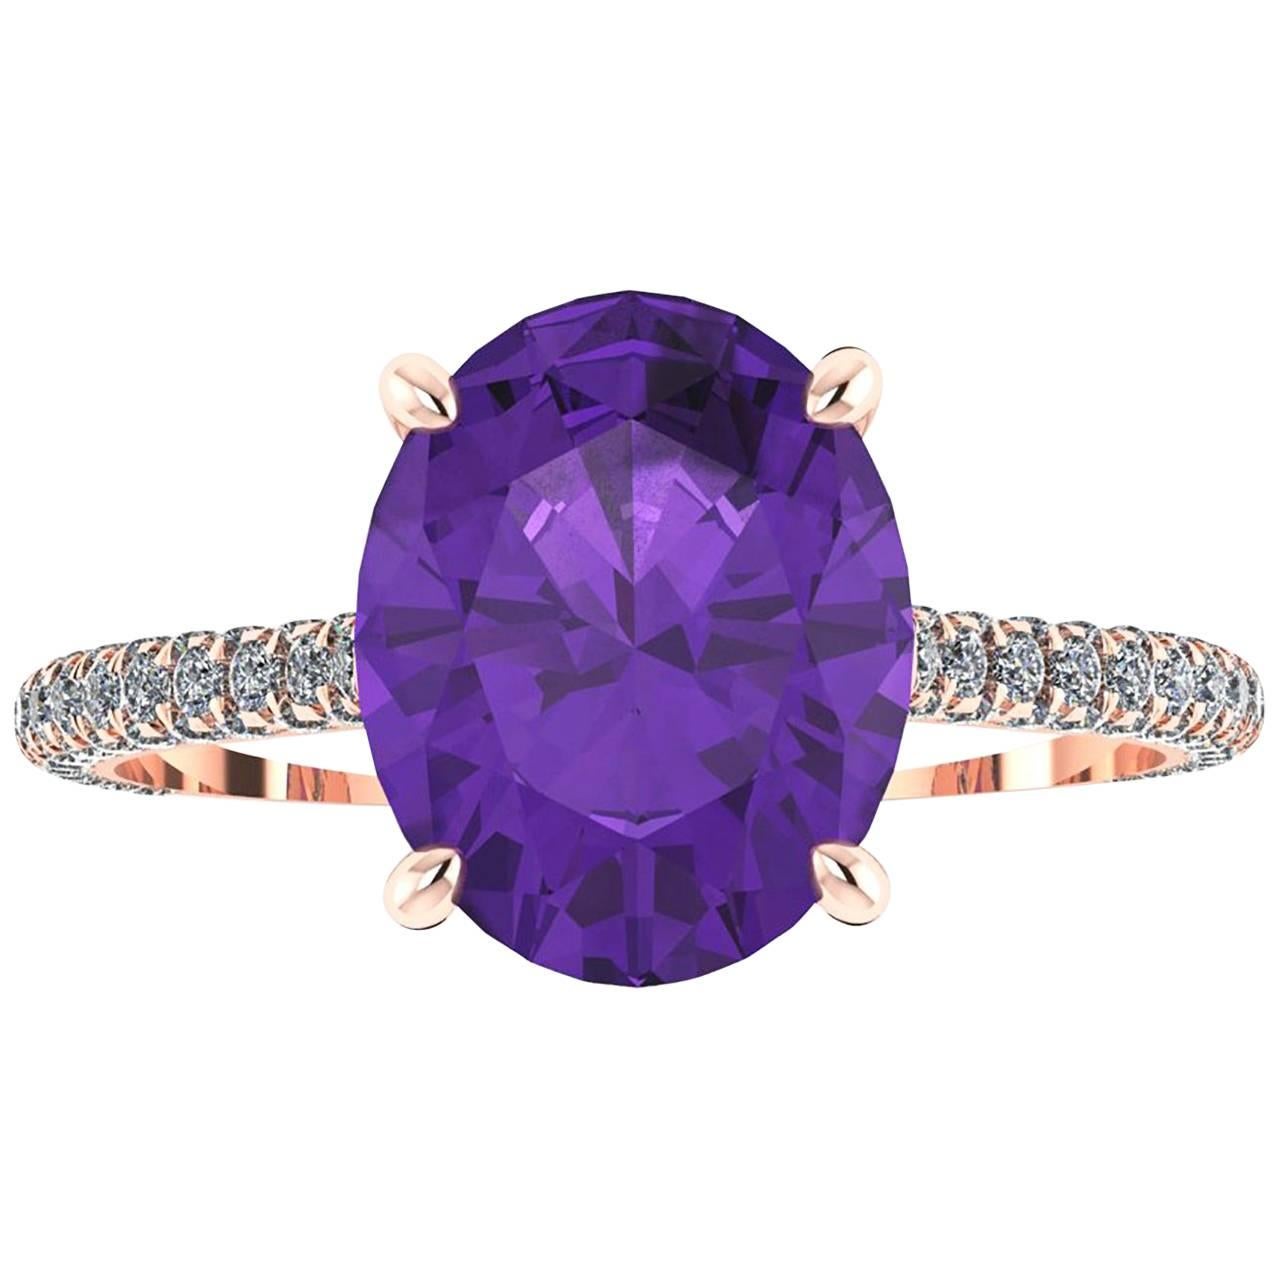 Bague Ferrucci en or rose 18 carats avec améthyste ovale violette naturelle et diamants blancs